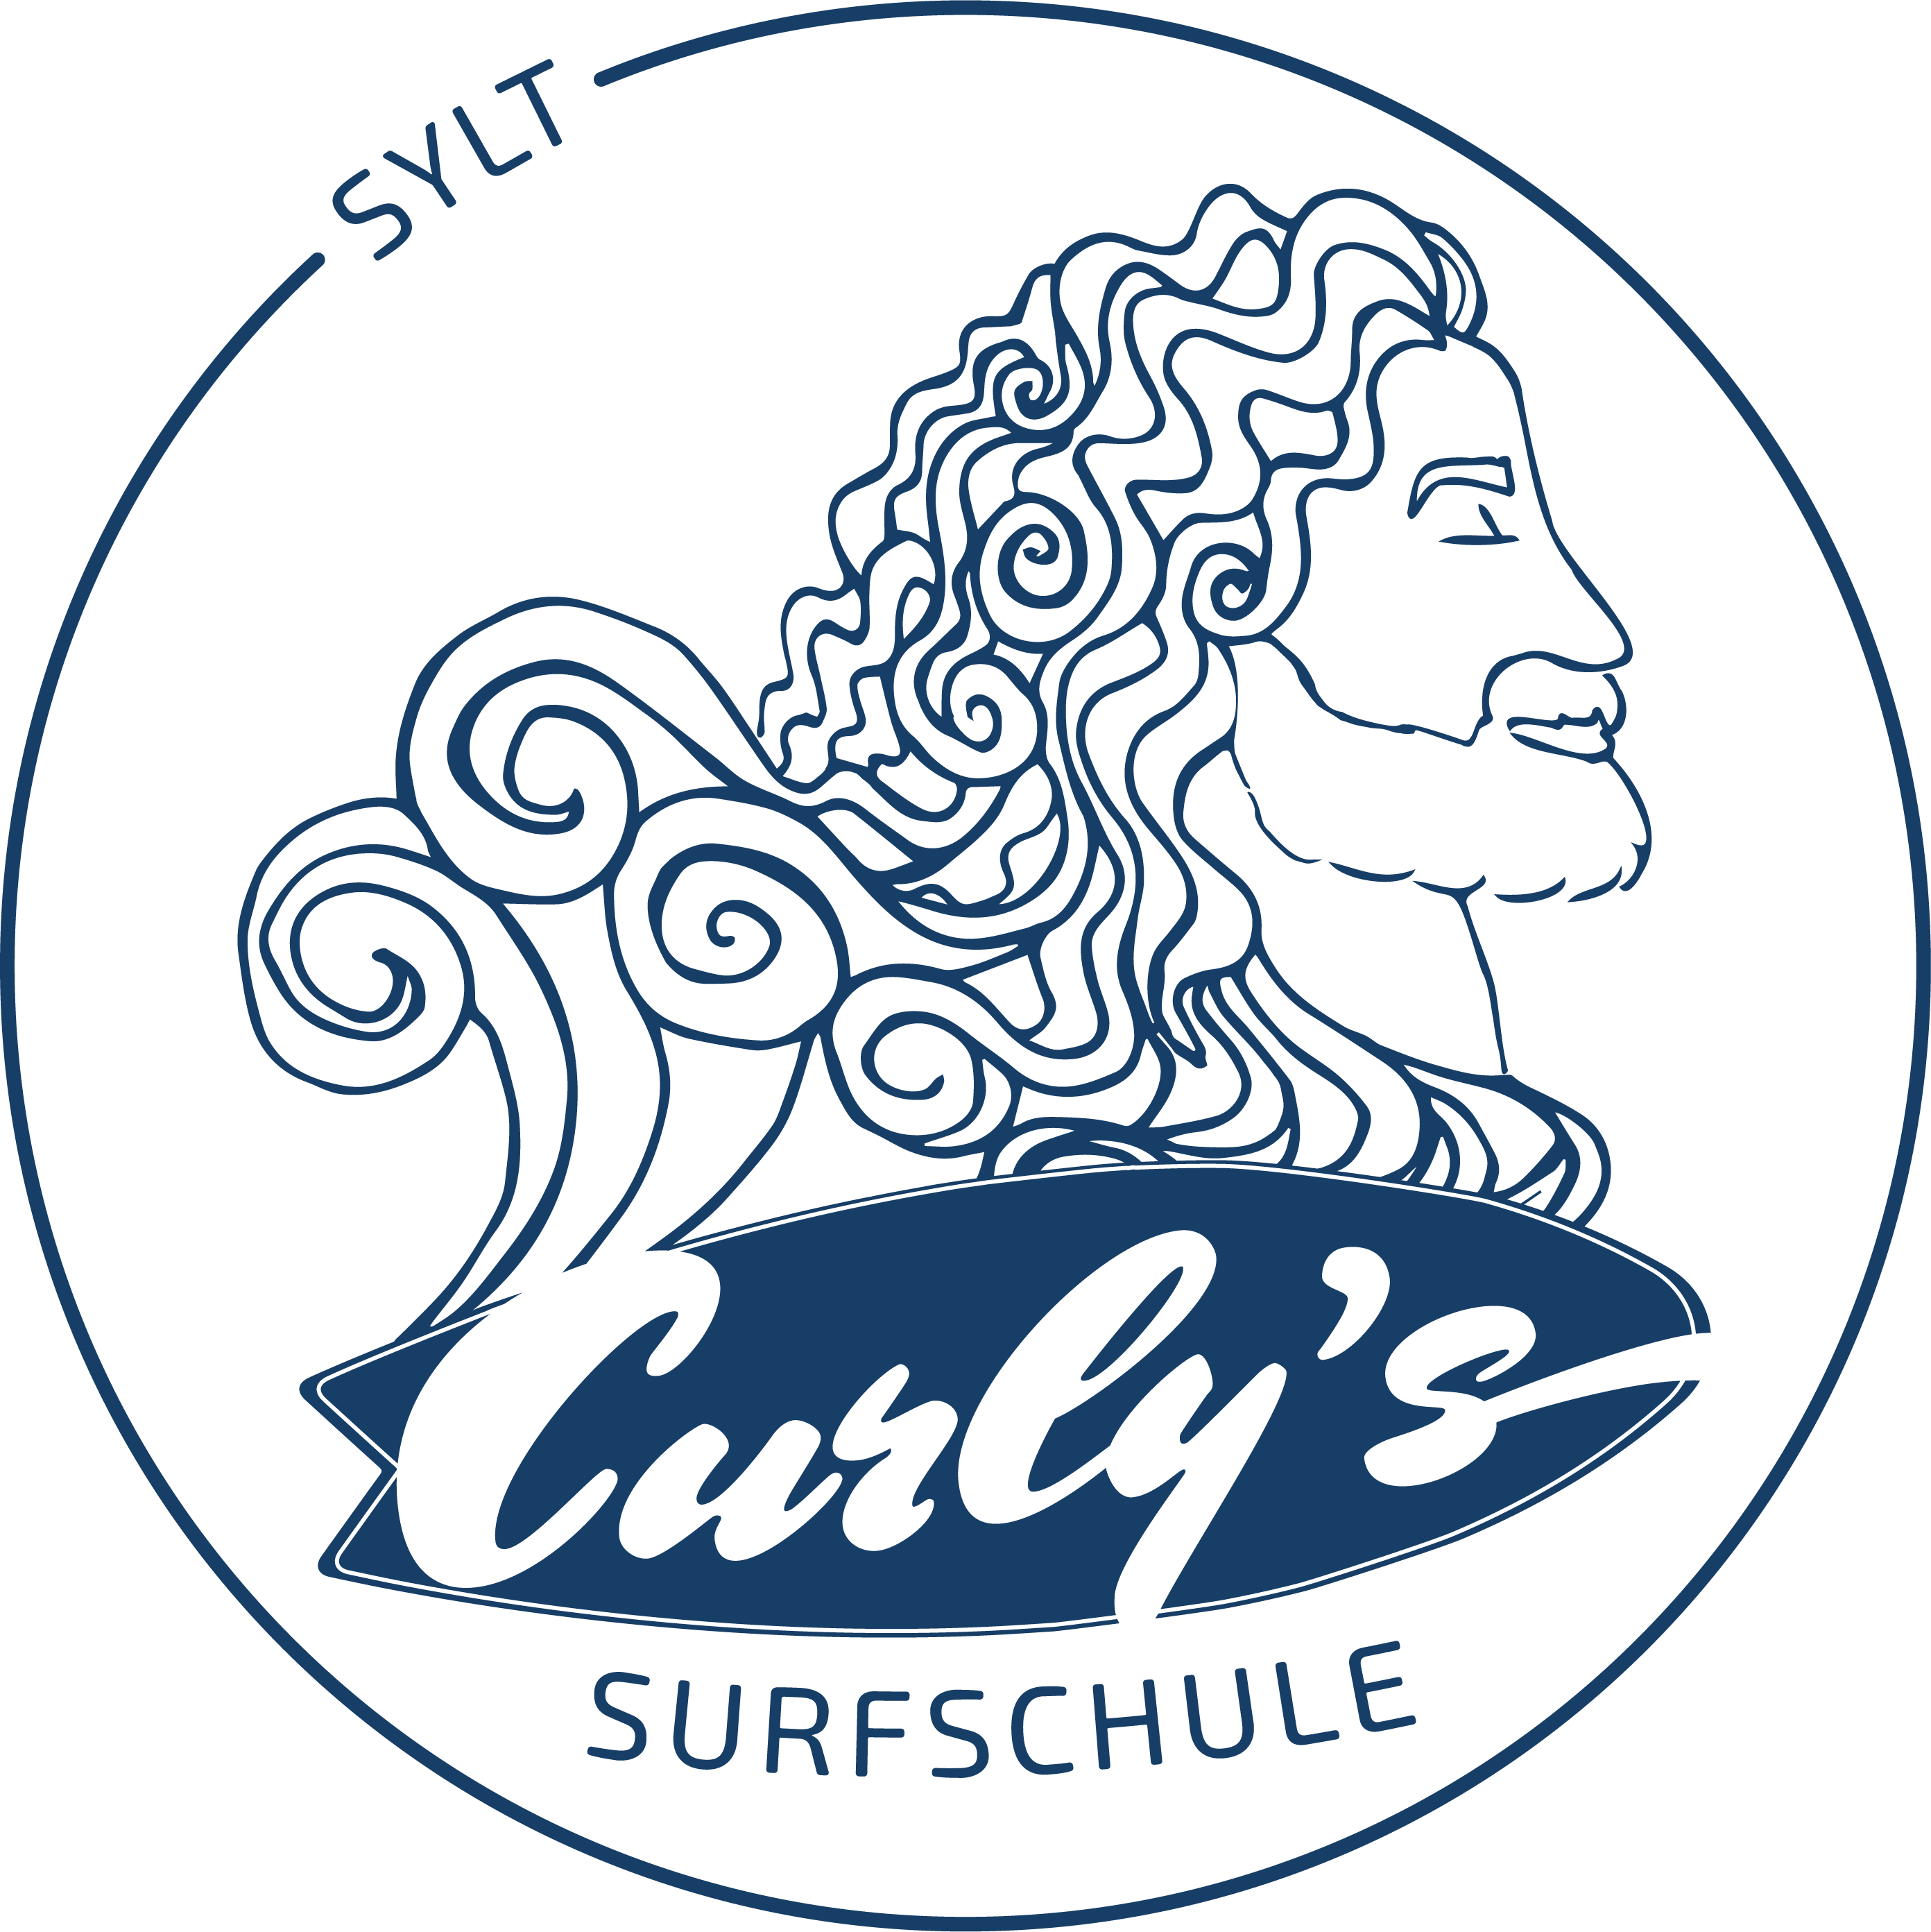 Das Logo von Curlys Surfschule auf Sylt in blau